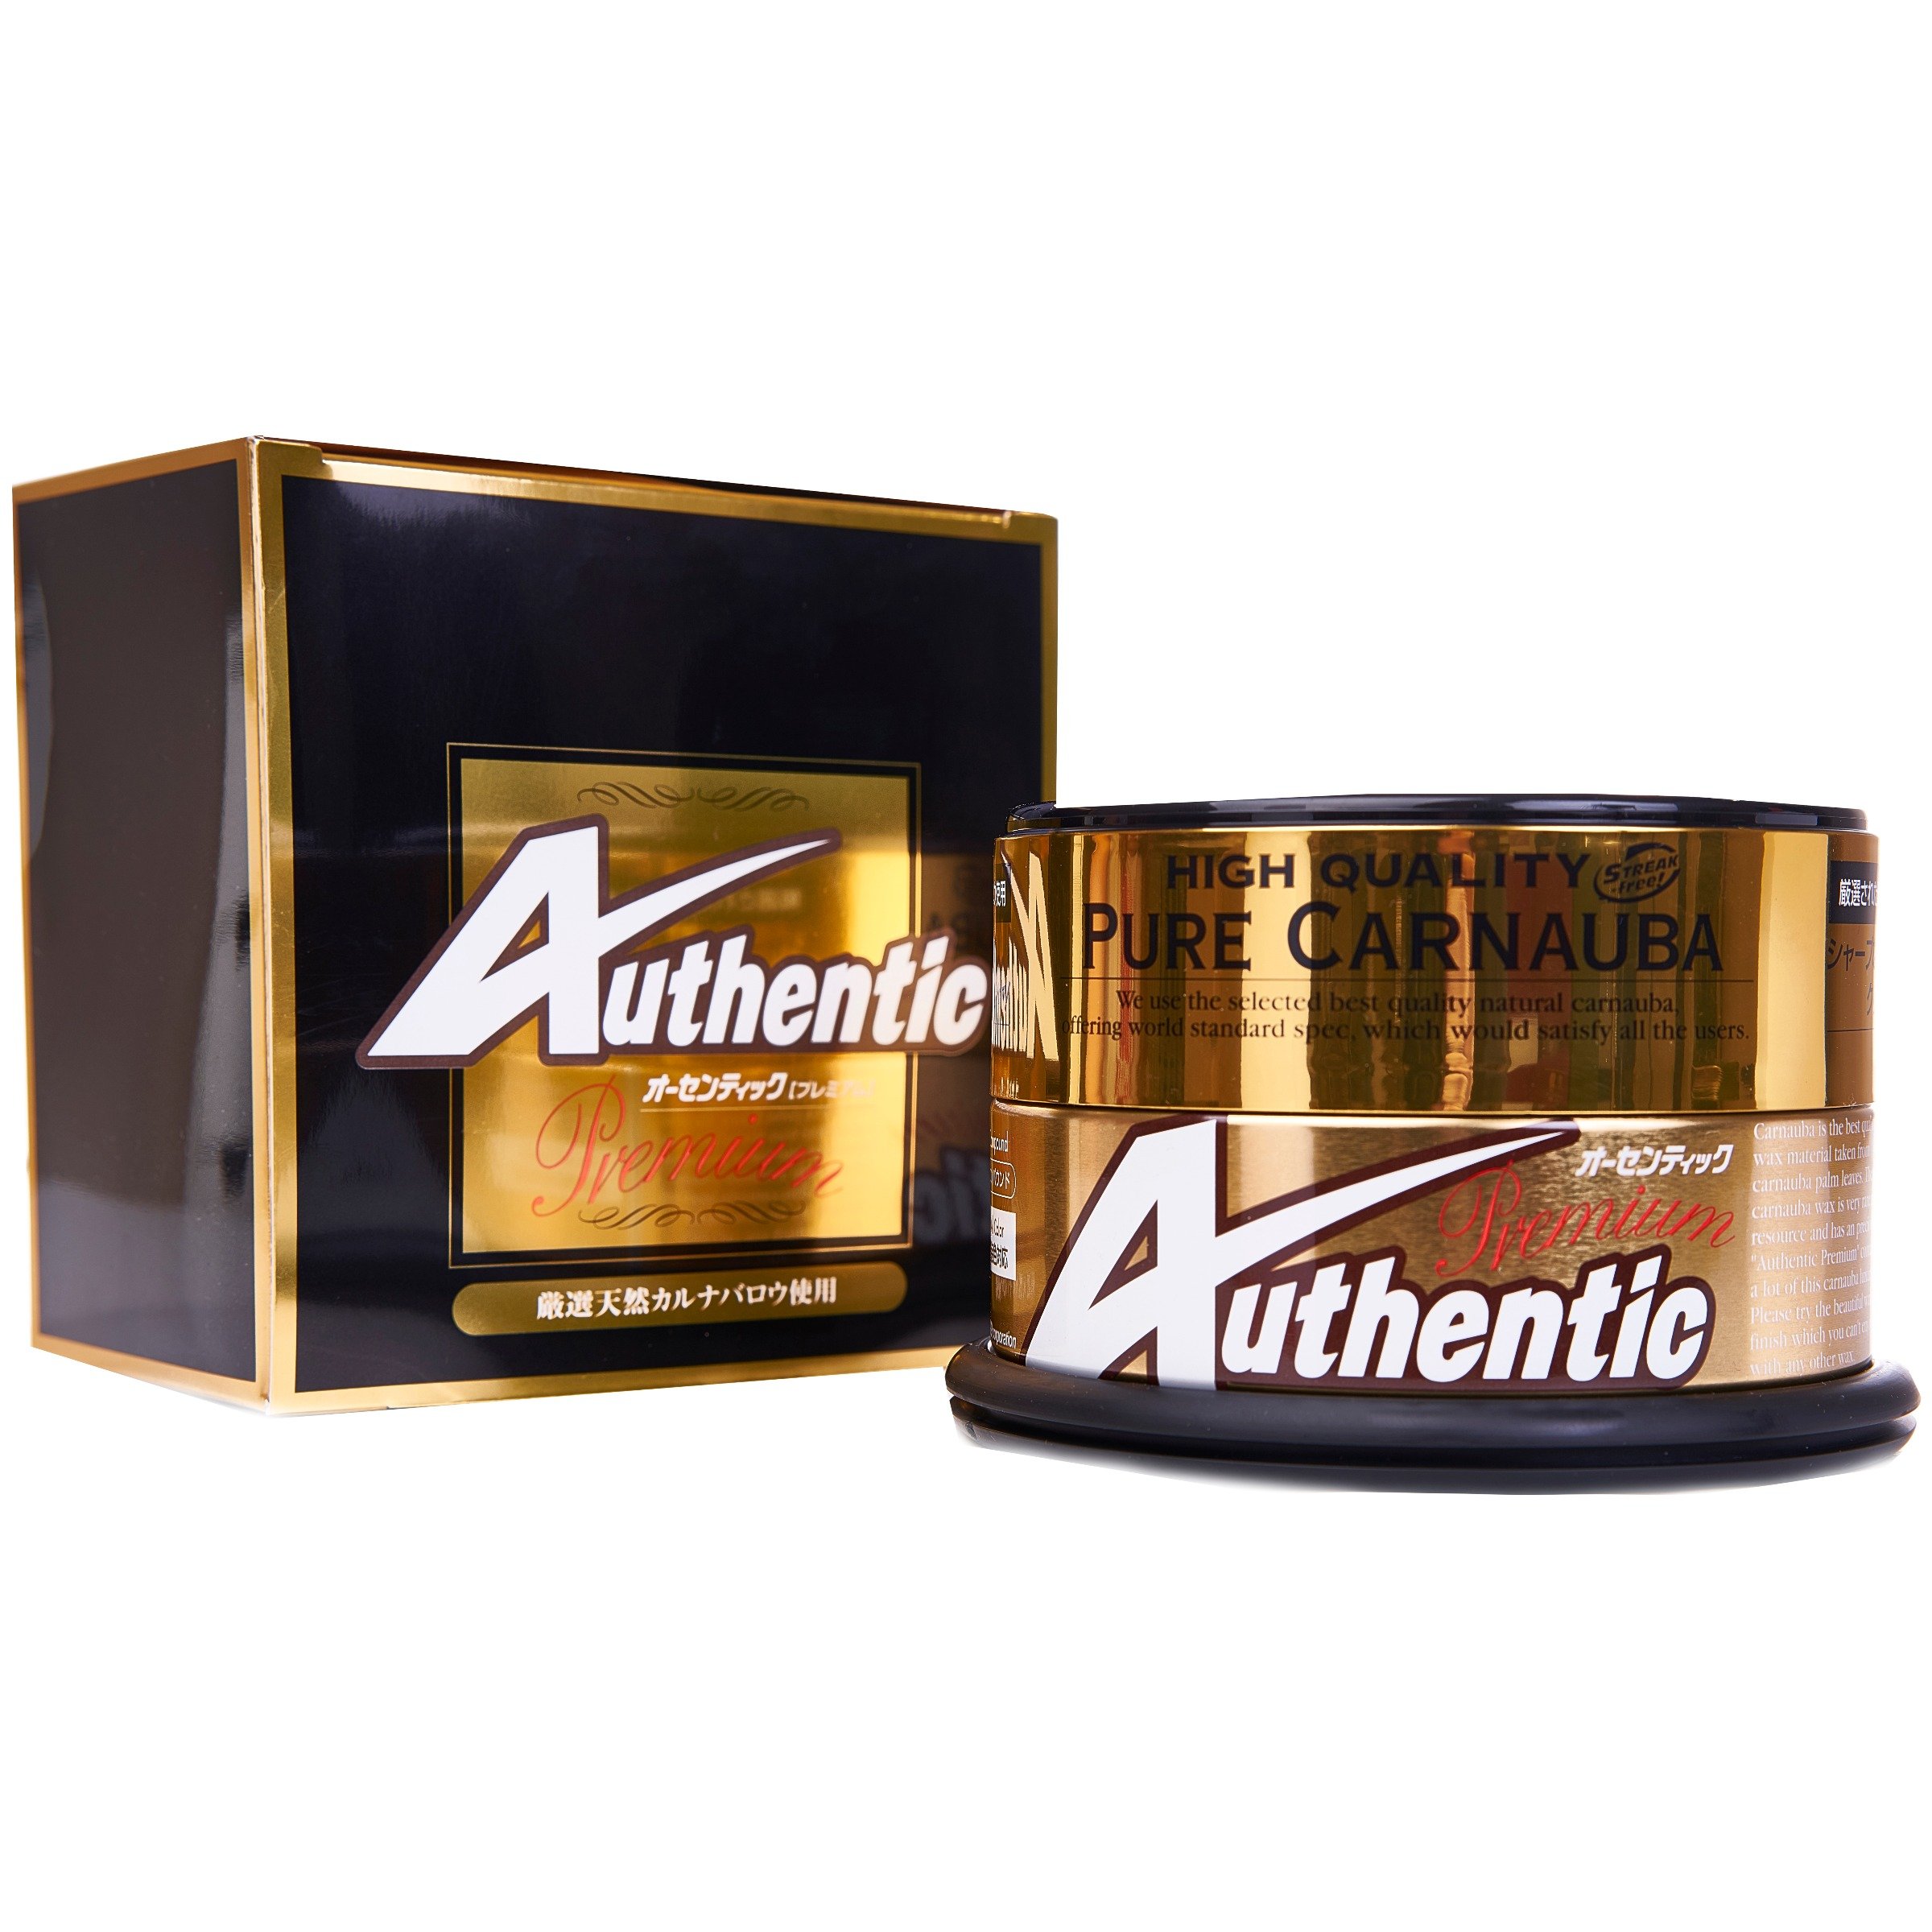 Authentic Premium Pure Carnauba Wax - 200gram